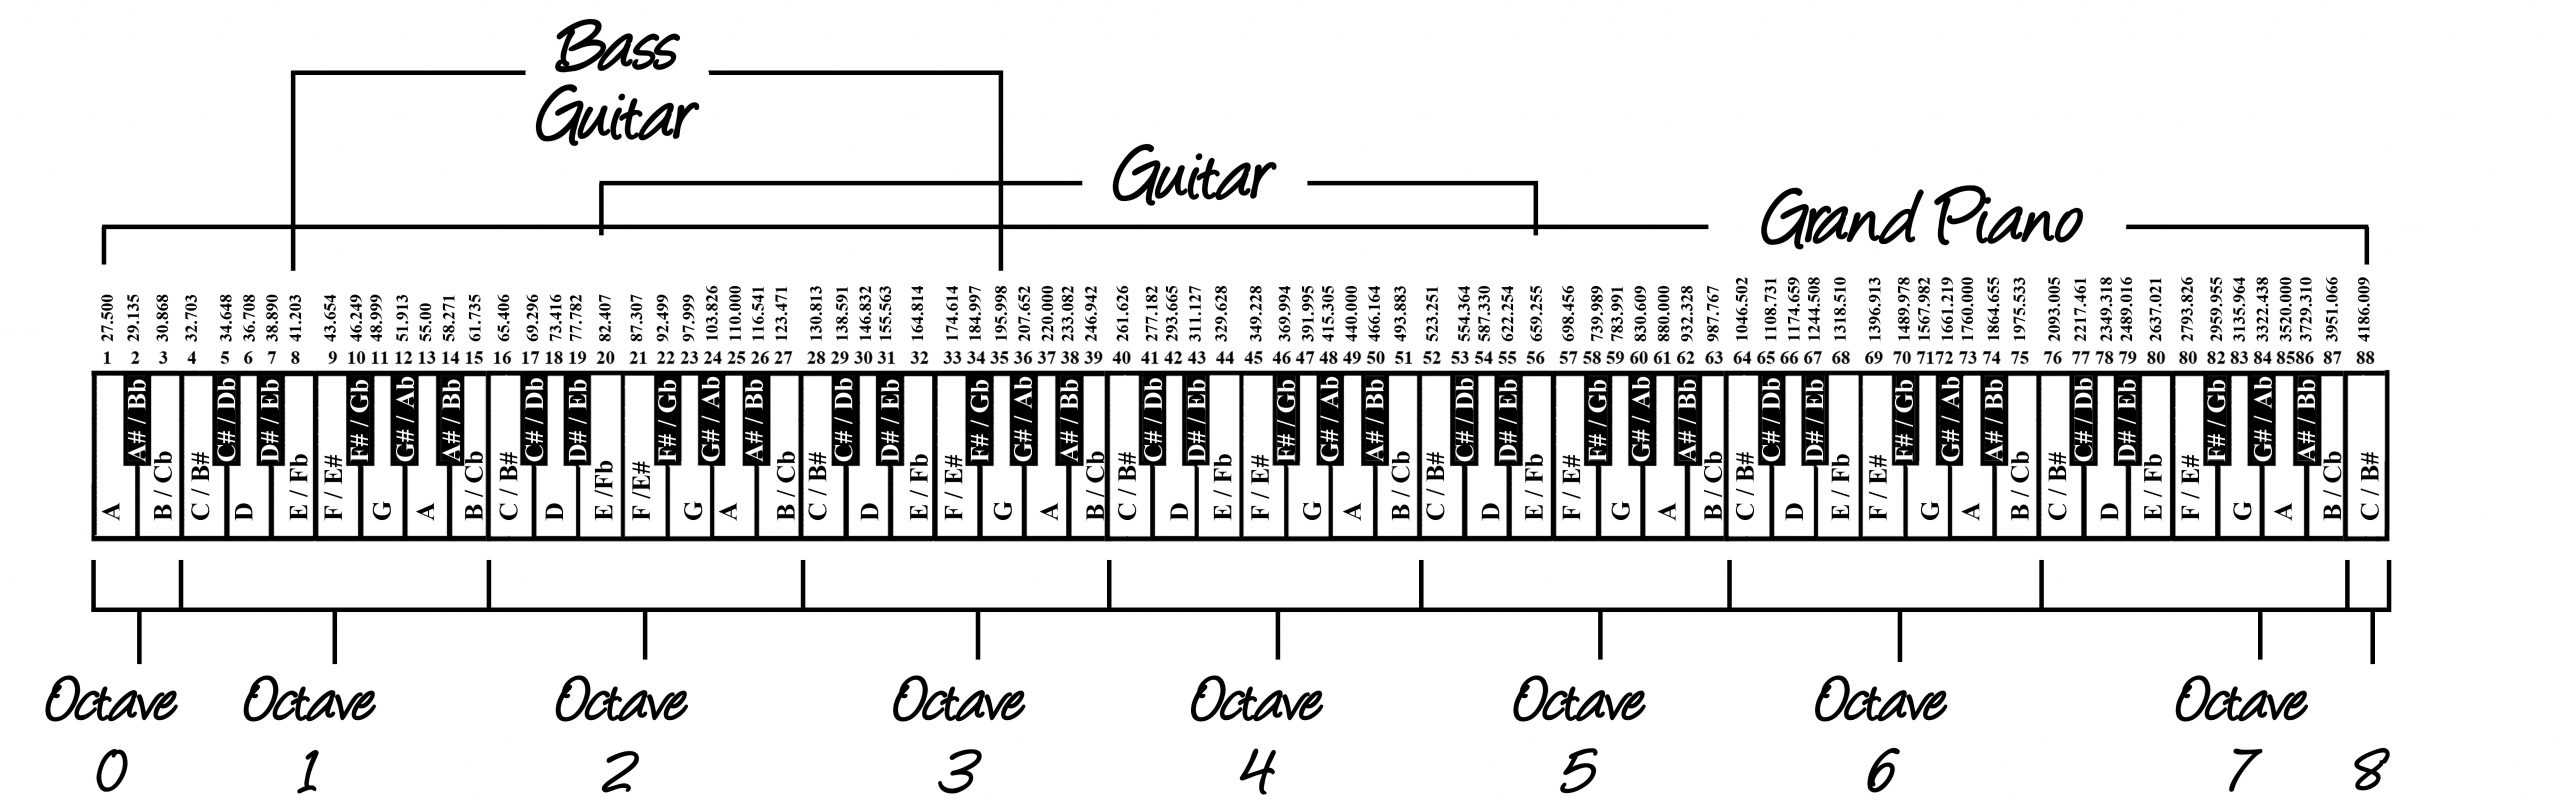 Схема октав. Таблица частот нот фортепиано. Частота нот фортепиано. Схема синтезатора 1 Октава. Частота клавиш пианино таблица.